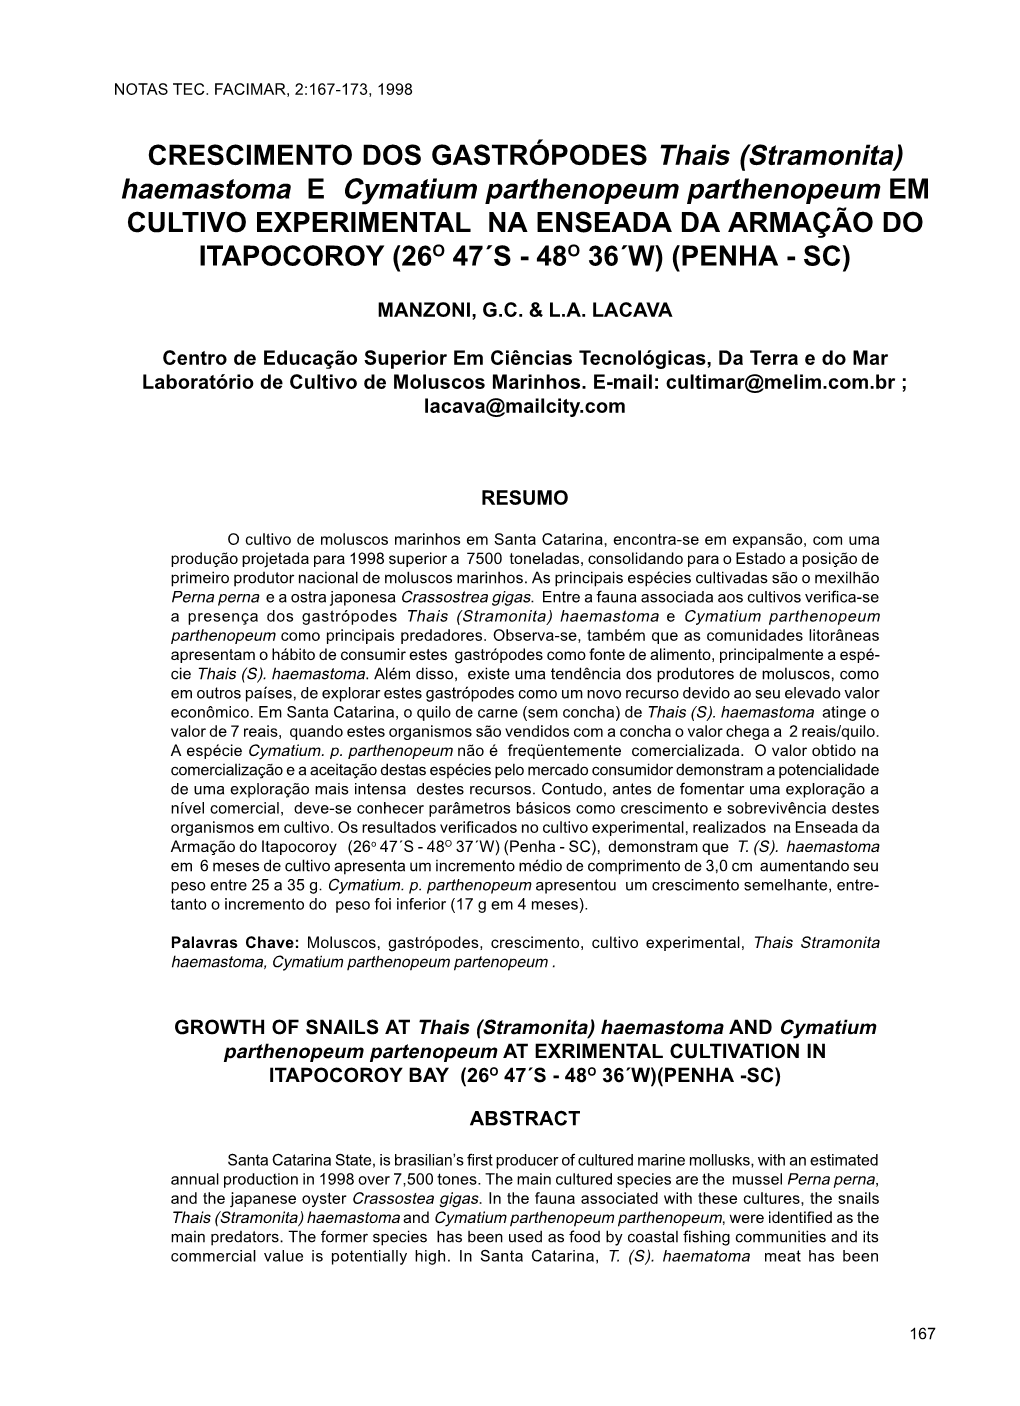 Stramonita) Haemastoma E Cymatium Parthenopeum Parthenopeum EM CULTIVO EXPERIMENTAL NA ENSEADA DA ARMAÇÃO DO ITAPOCOROY (26O 47´S - 48O 36´W) (PENHA - SC